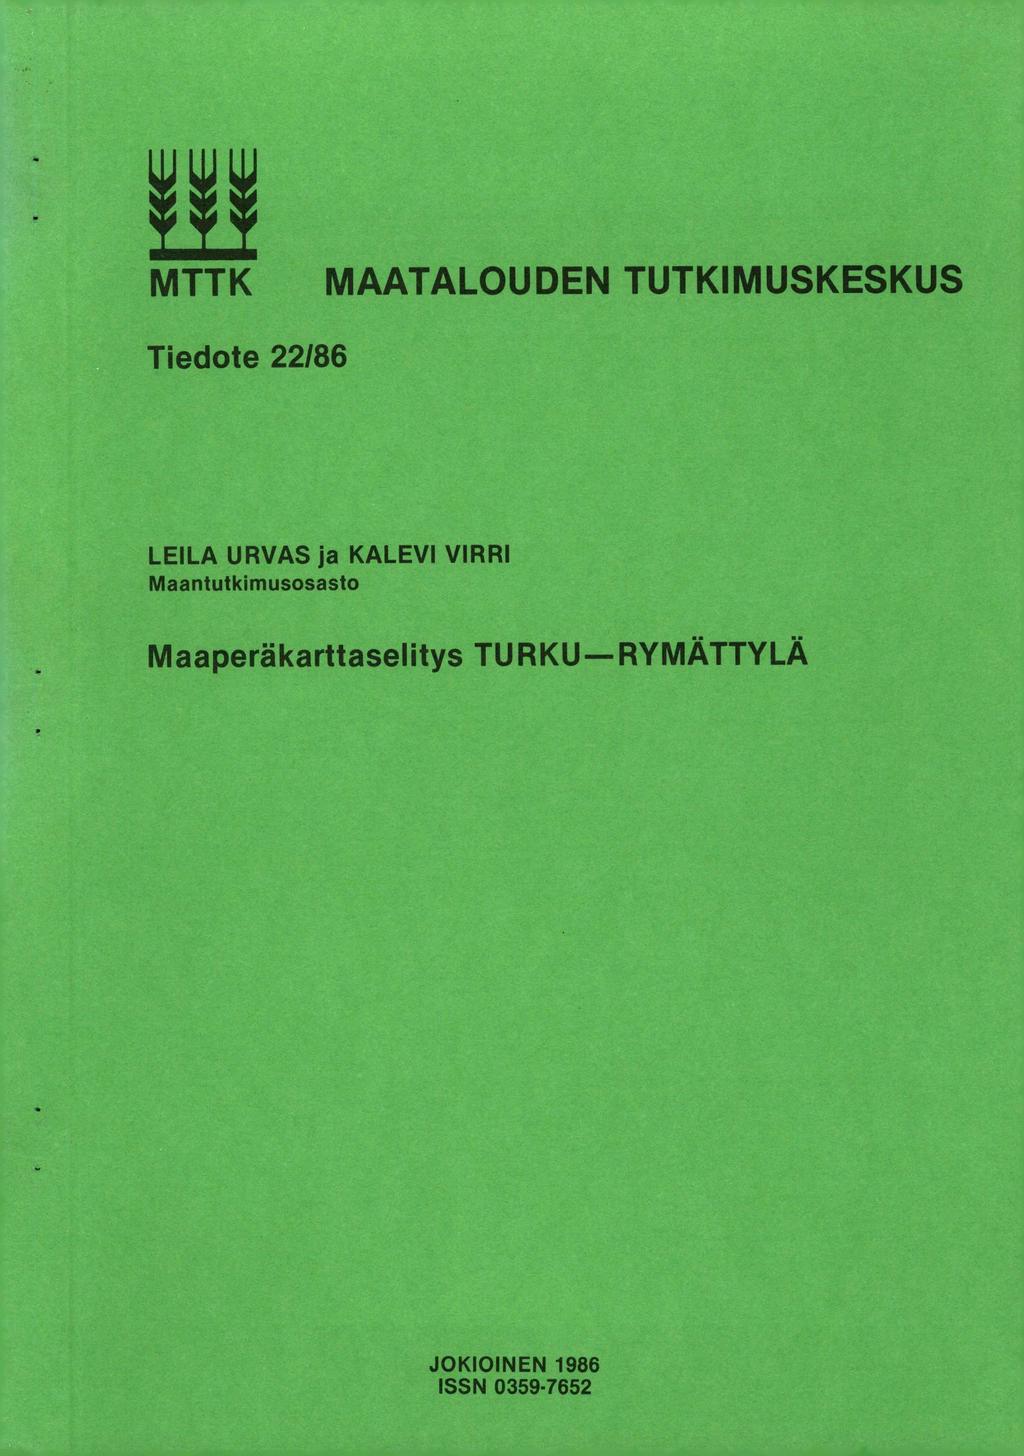 MTTK MAATALOUDEN TUTKIMUSKESKUS Tiedote 22/86 LEILA URVAS ja KALEVI VIRRI